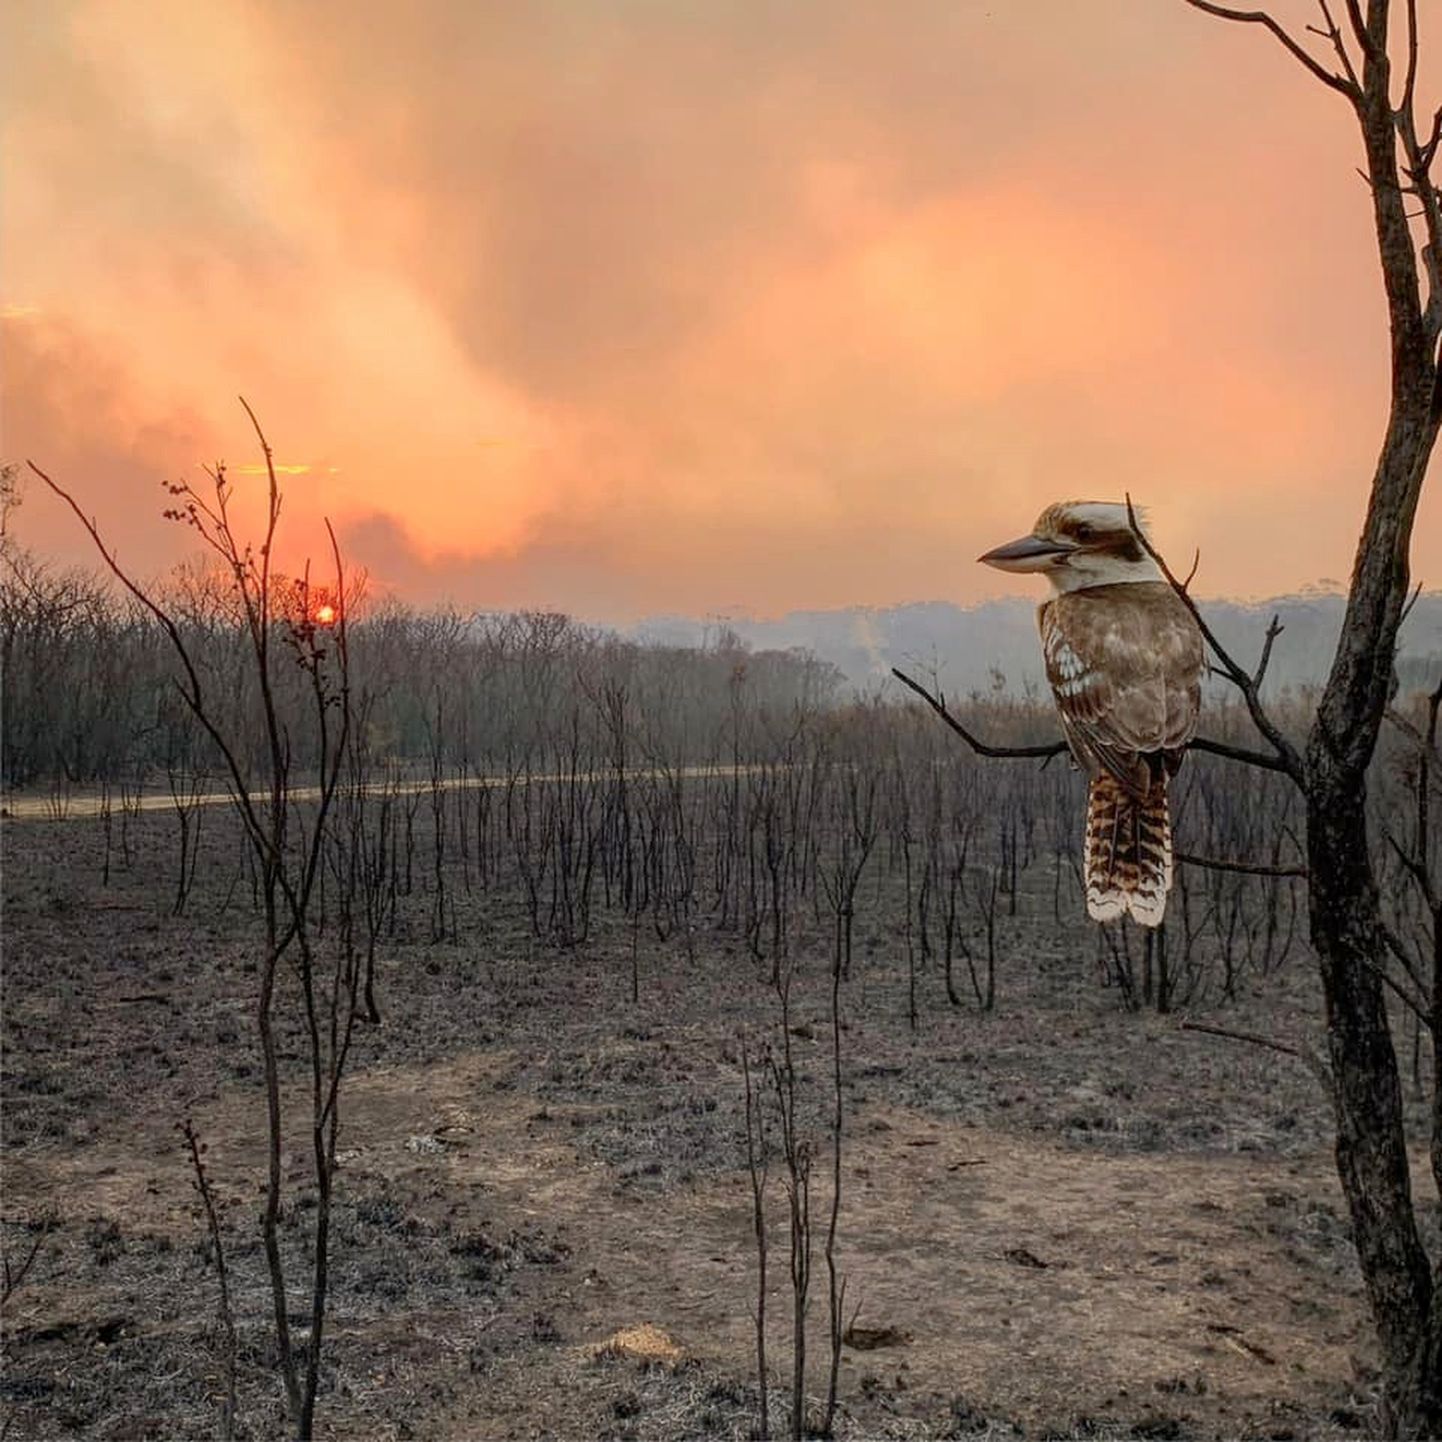 Põlenud maastik New South Walesis Wallabi Pointis. Põlenud puul istub kuukabarra